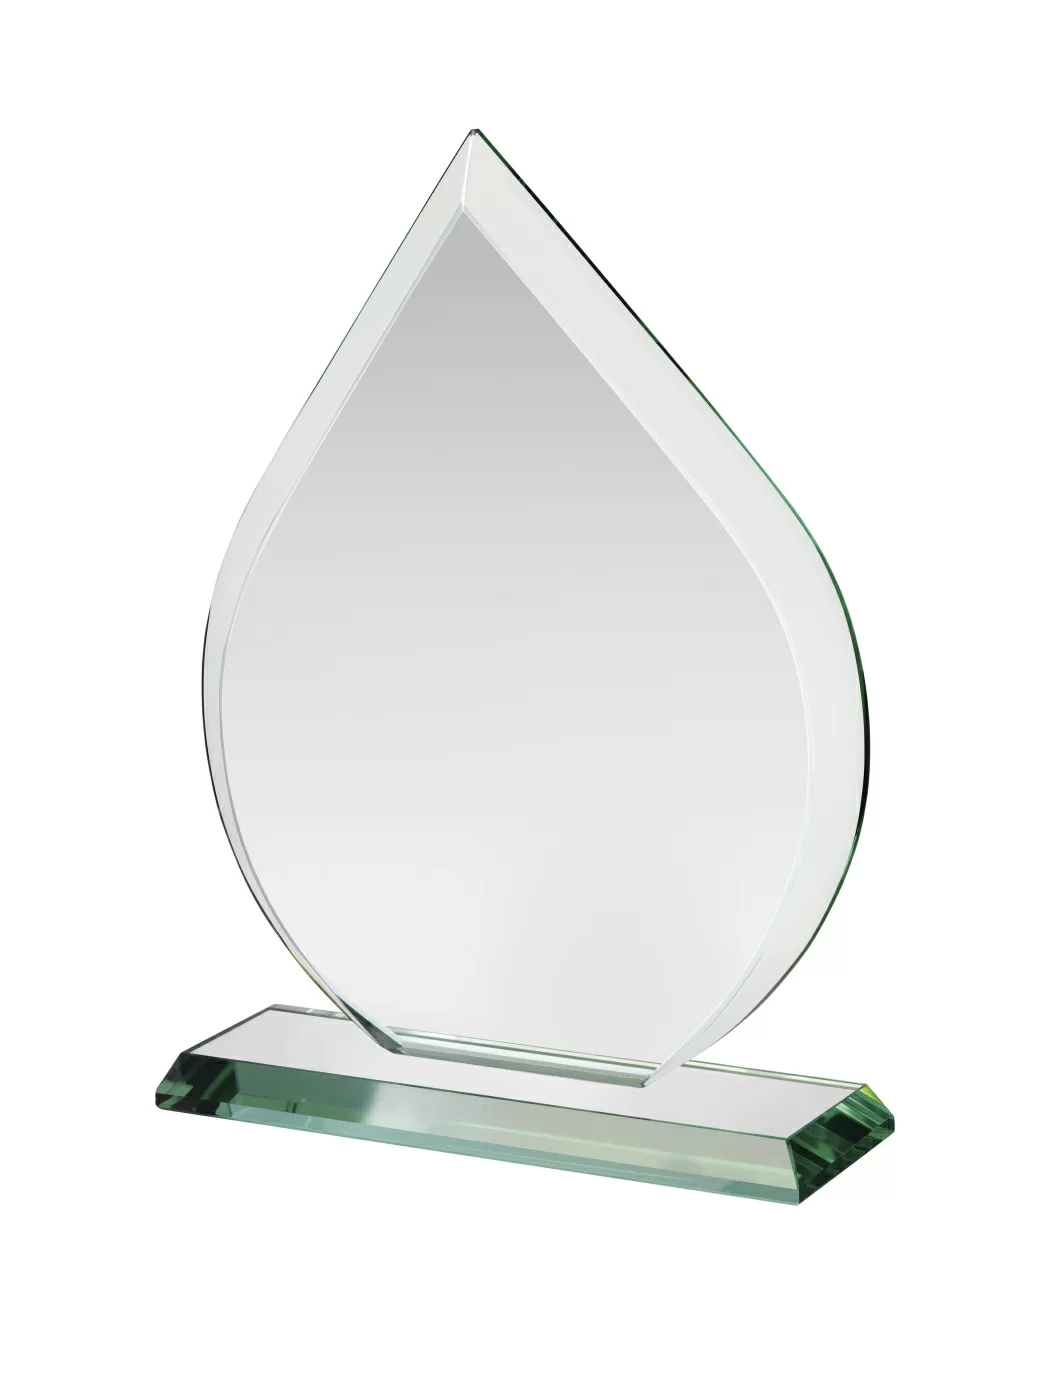 Дропс награды. Награда капля из оргстекла. Модель:ve6400b стекло. Награда с каплей нефти. Jade Glass.